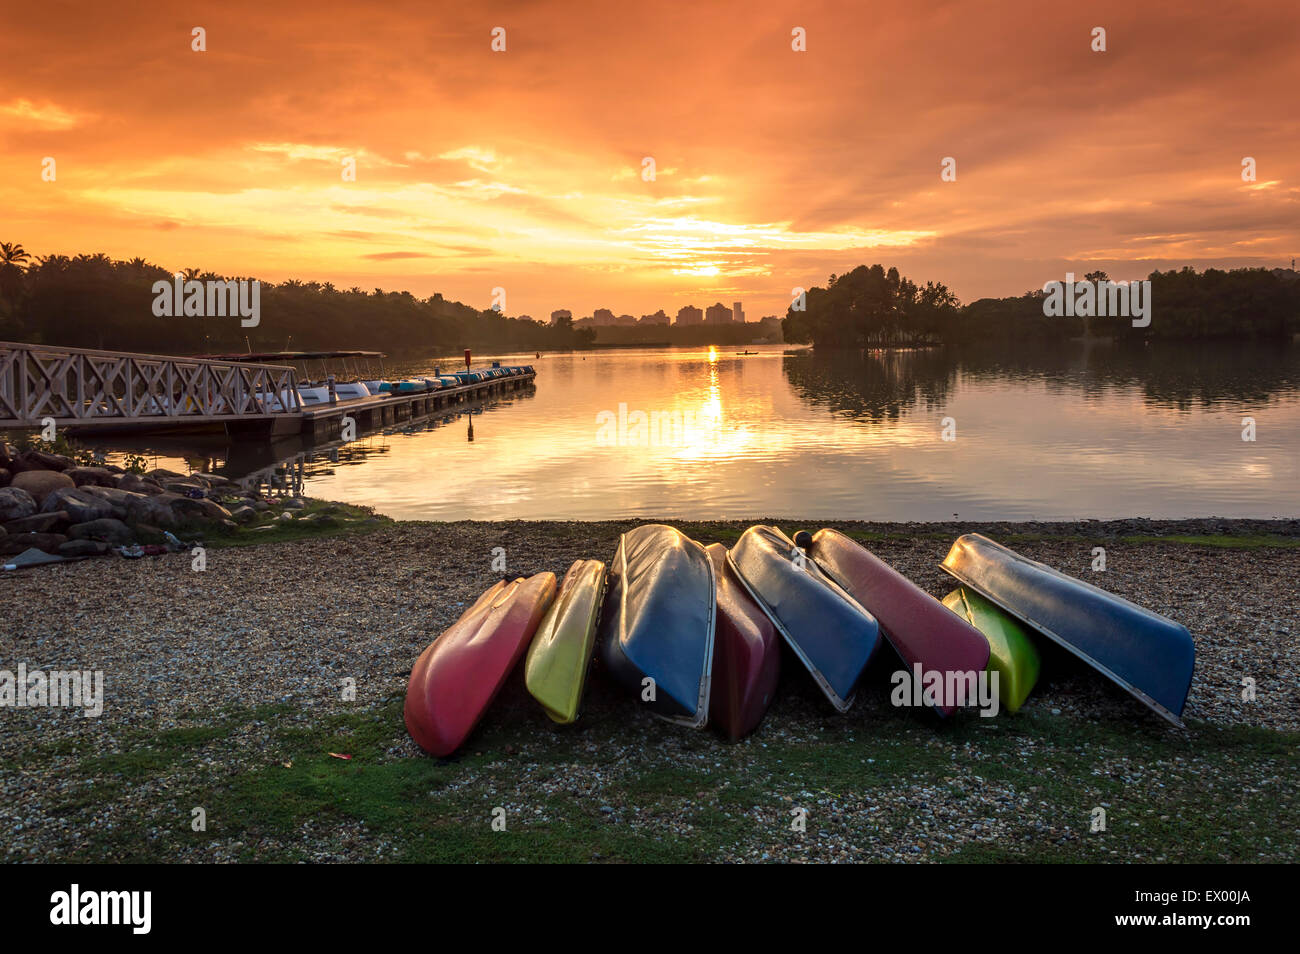 Canoe with sunset background Stock Photo